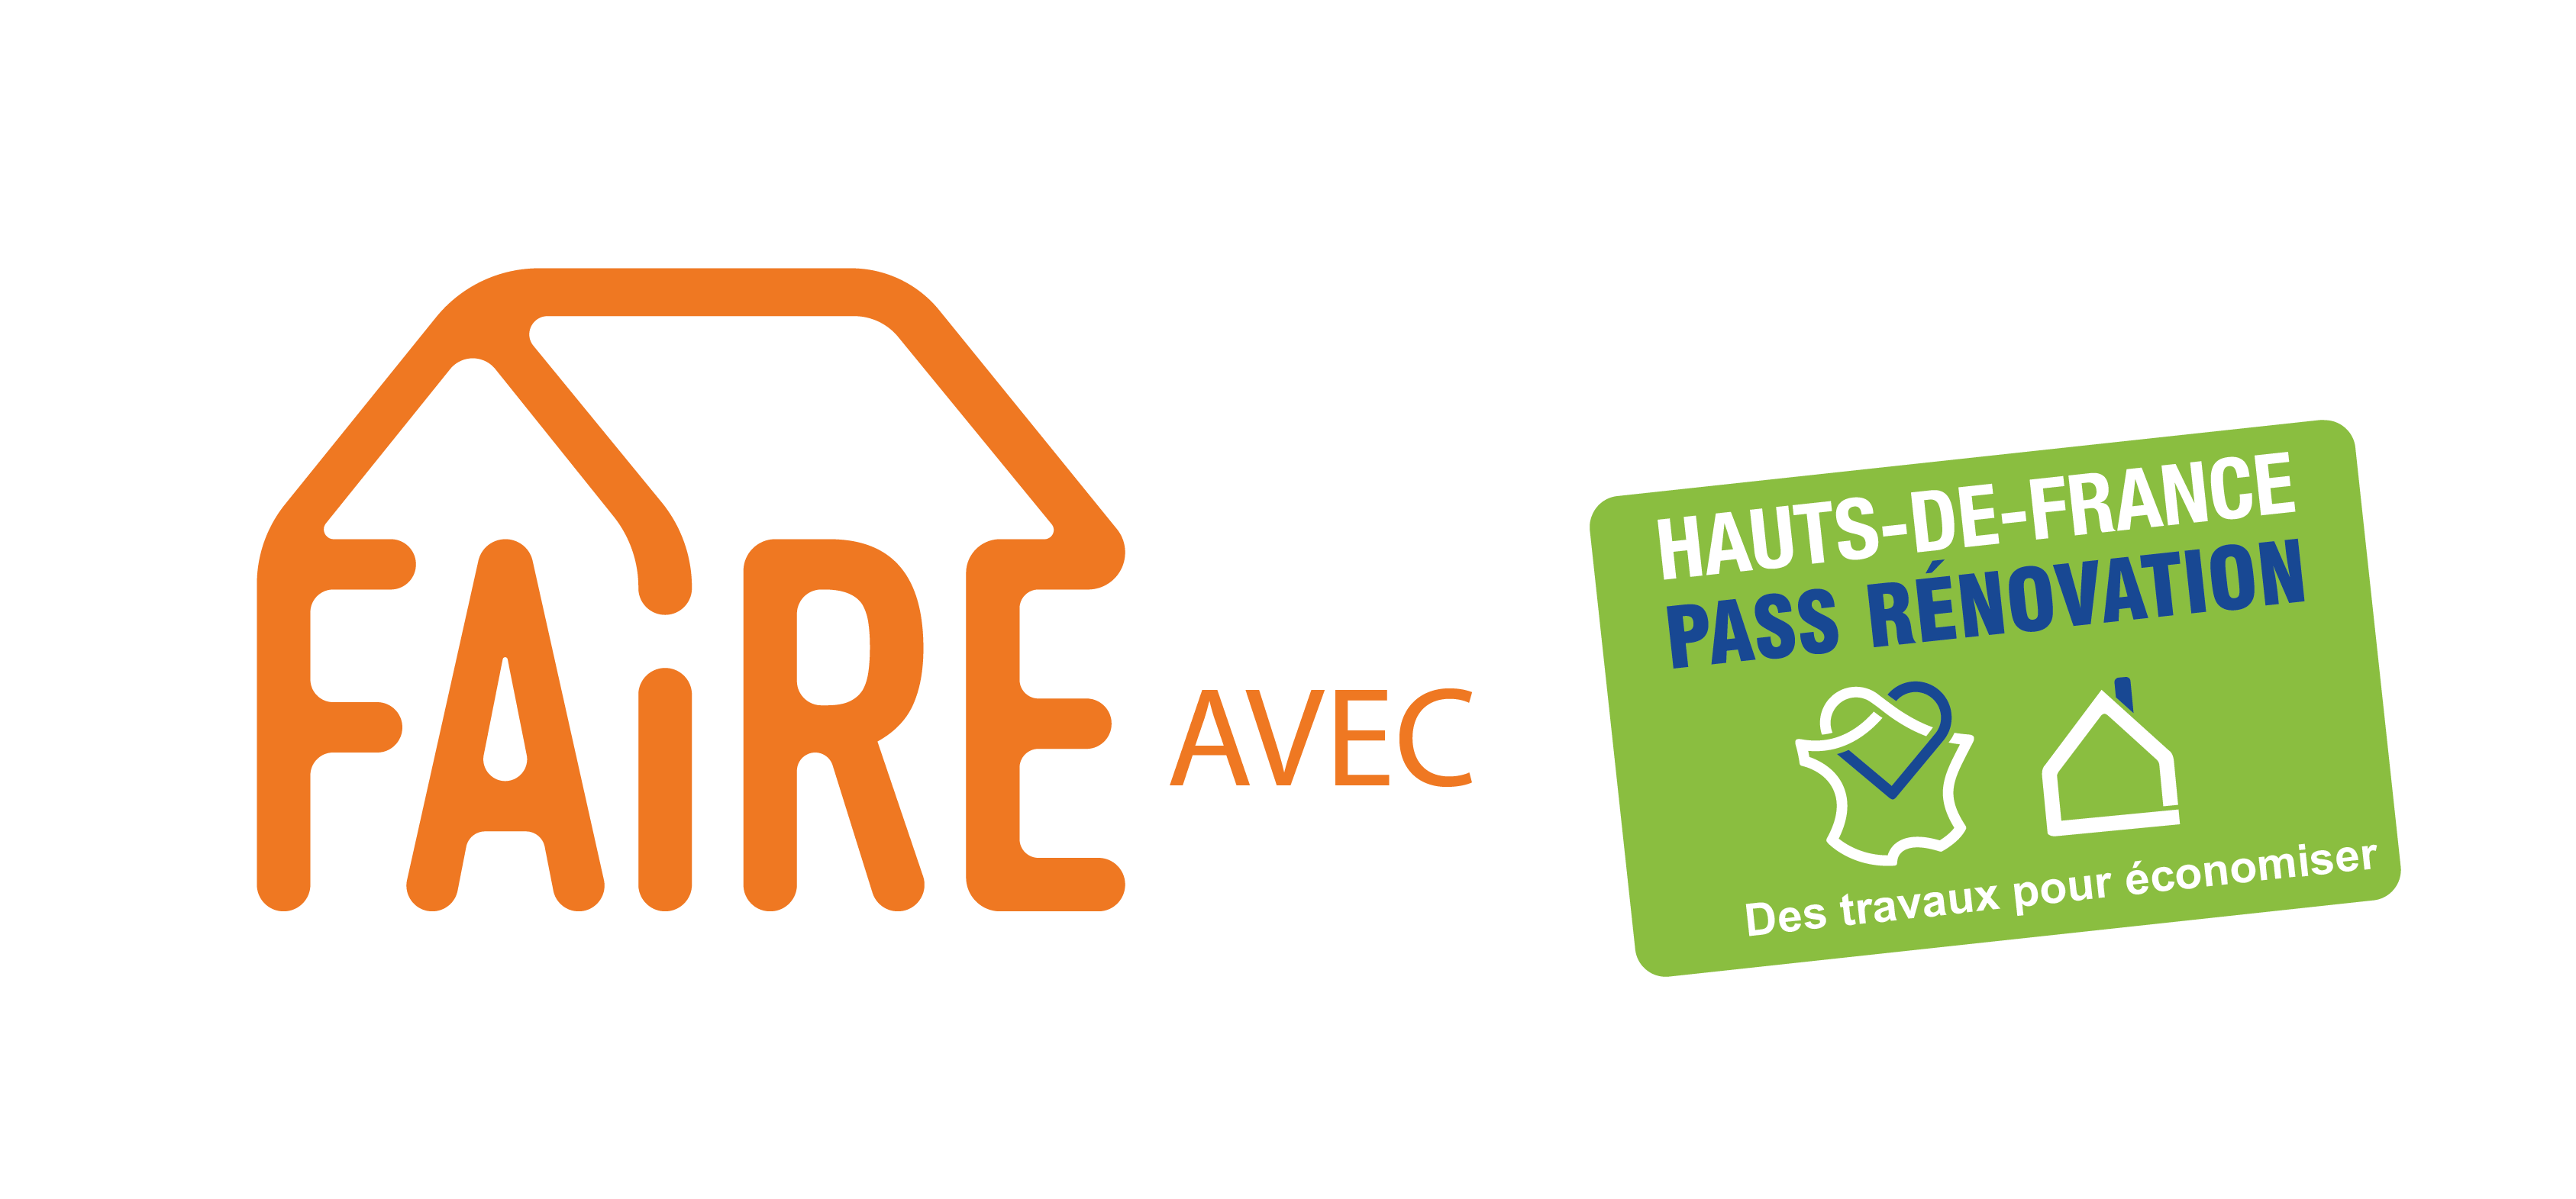 FAIRE AVEC - Hauts-de-France Pass Rénovation